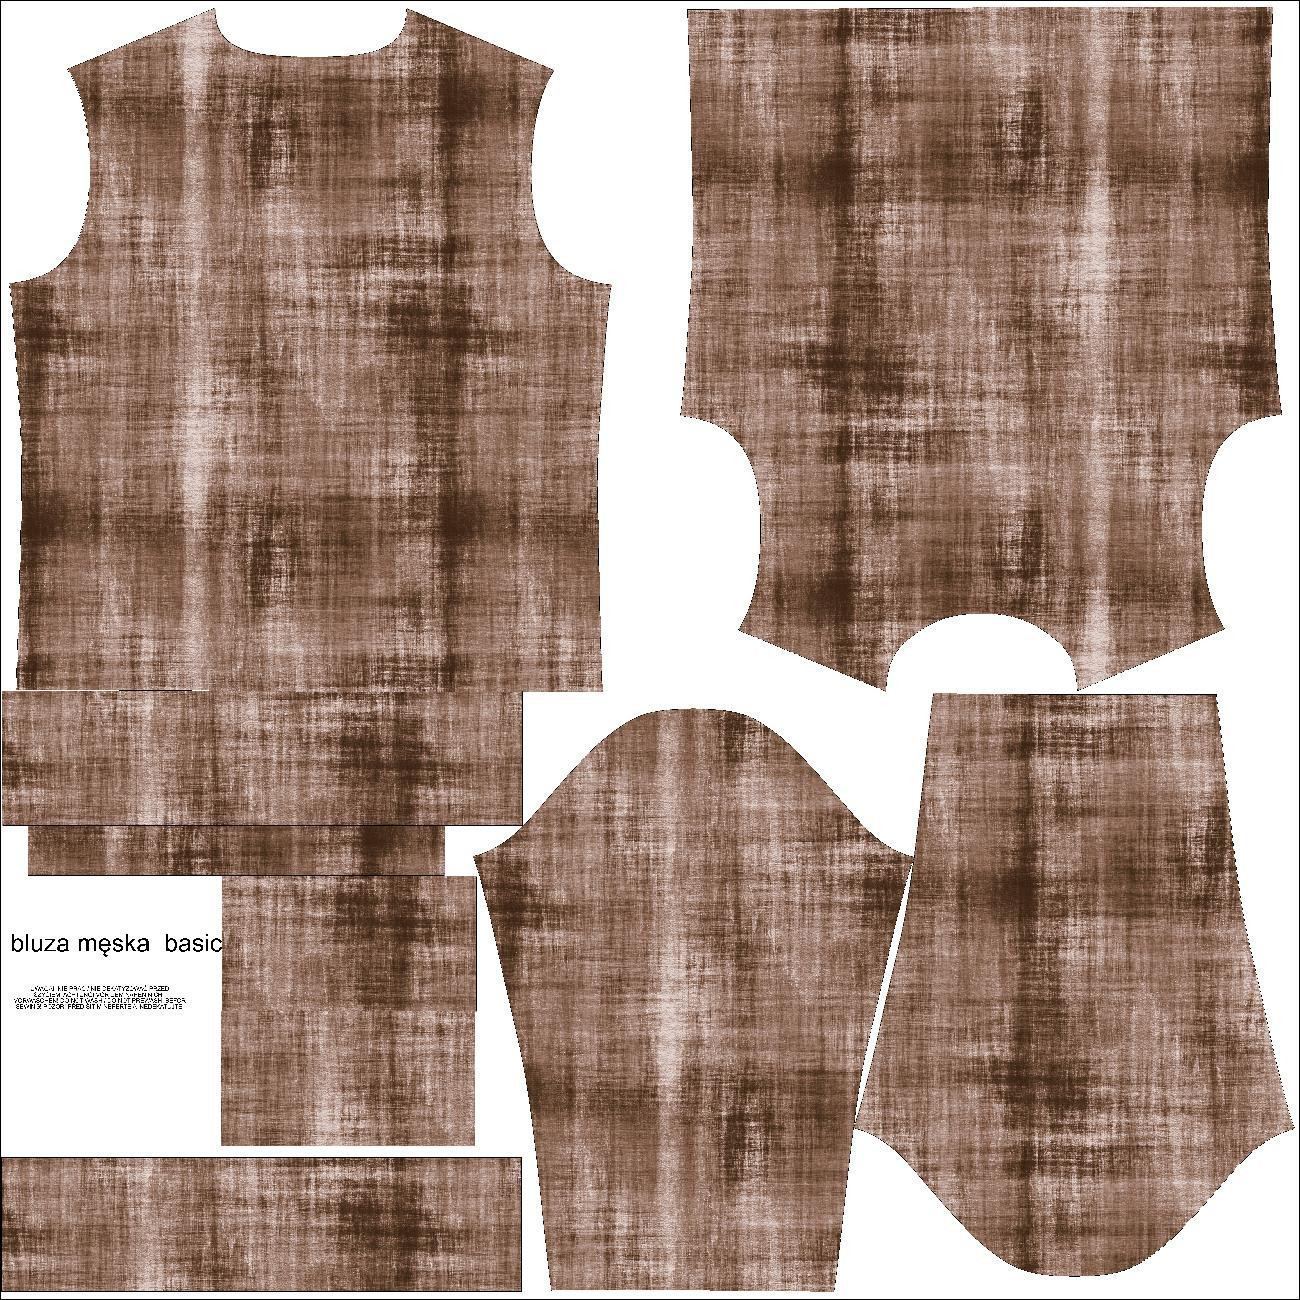 MEN’S SWEATSHIRT (OREGON) BASIC - ACID WASH PAT. 2 (brown) - sewing set